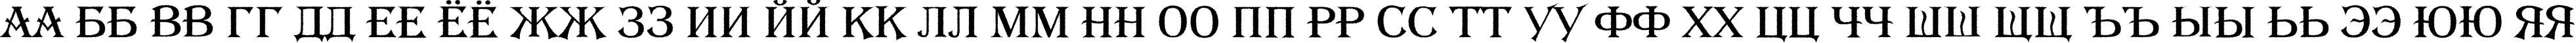 Пример написания русского алфавита шрифтом a_AlgeriusRough